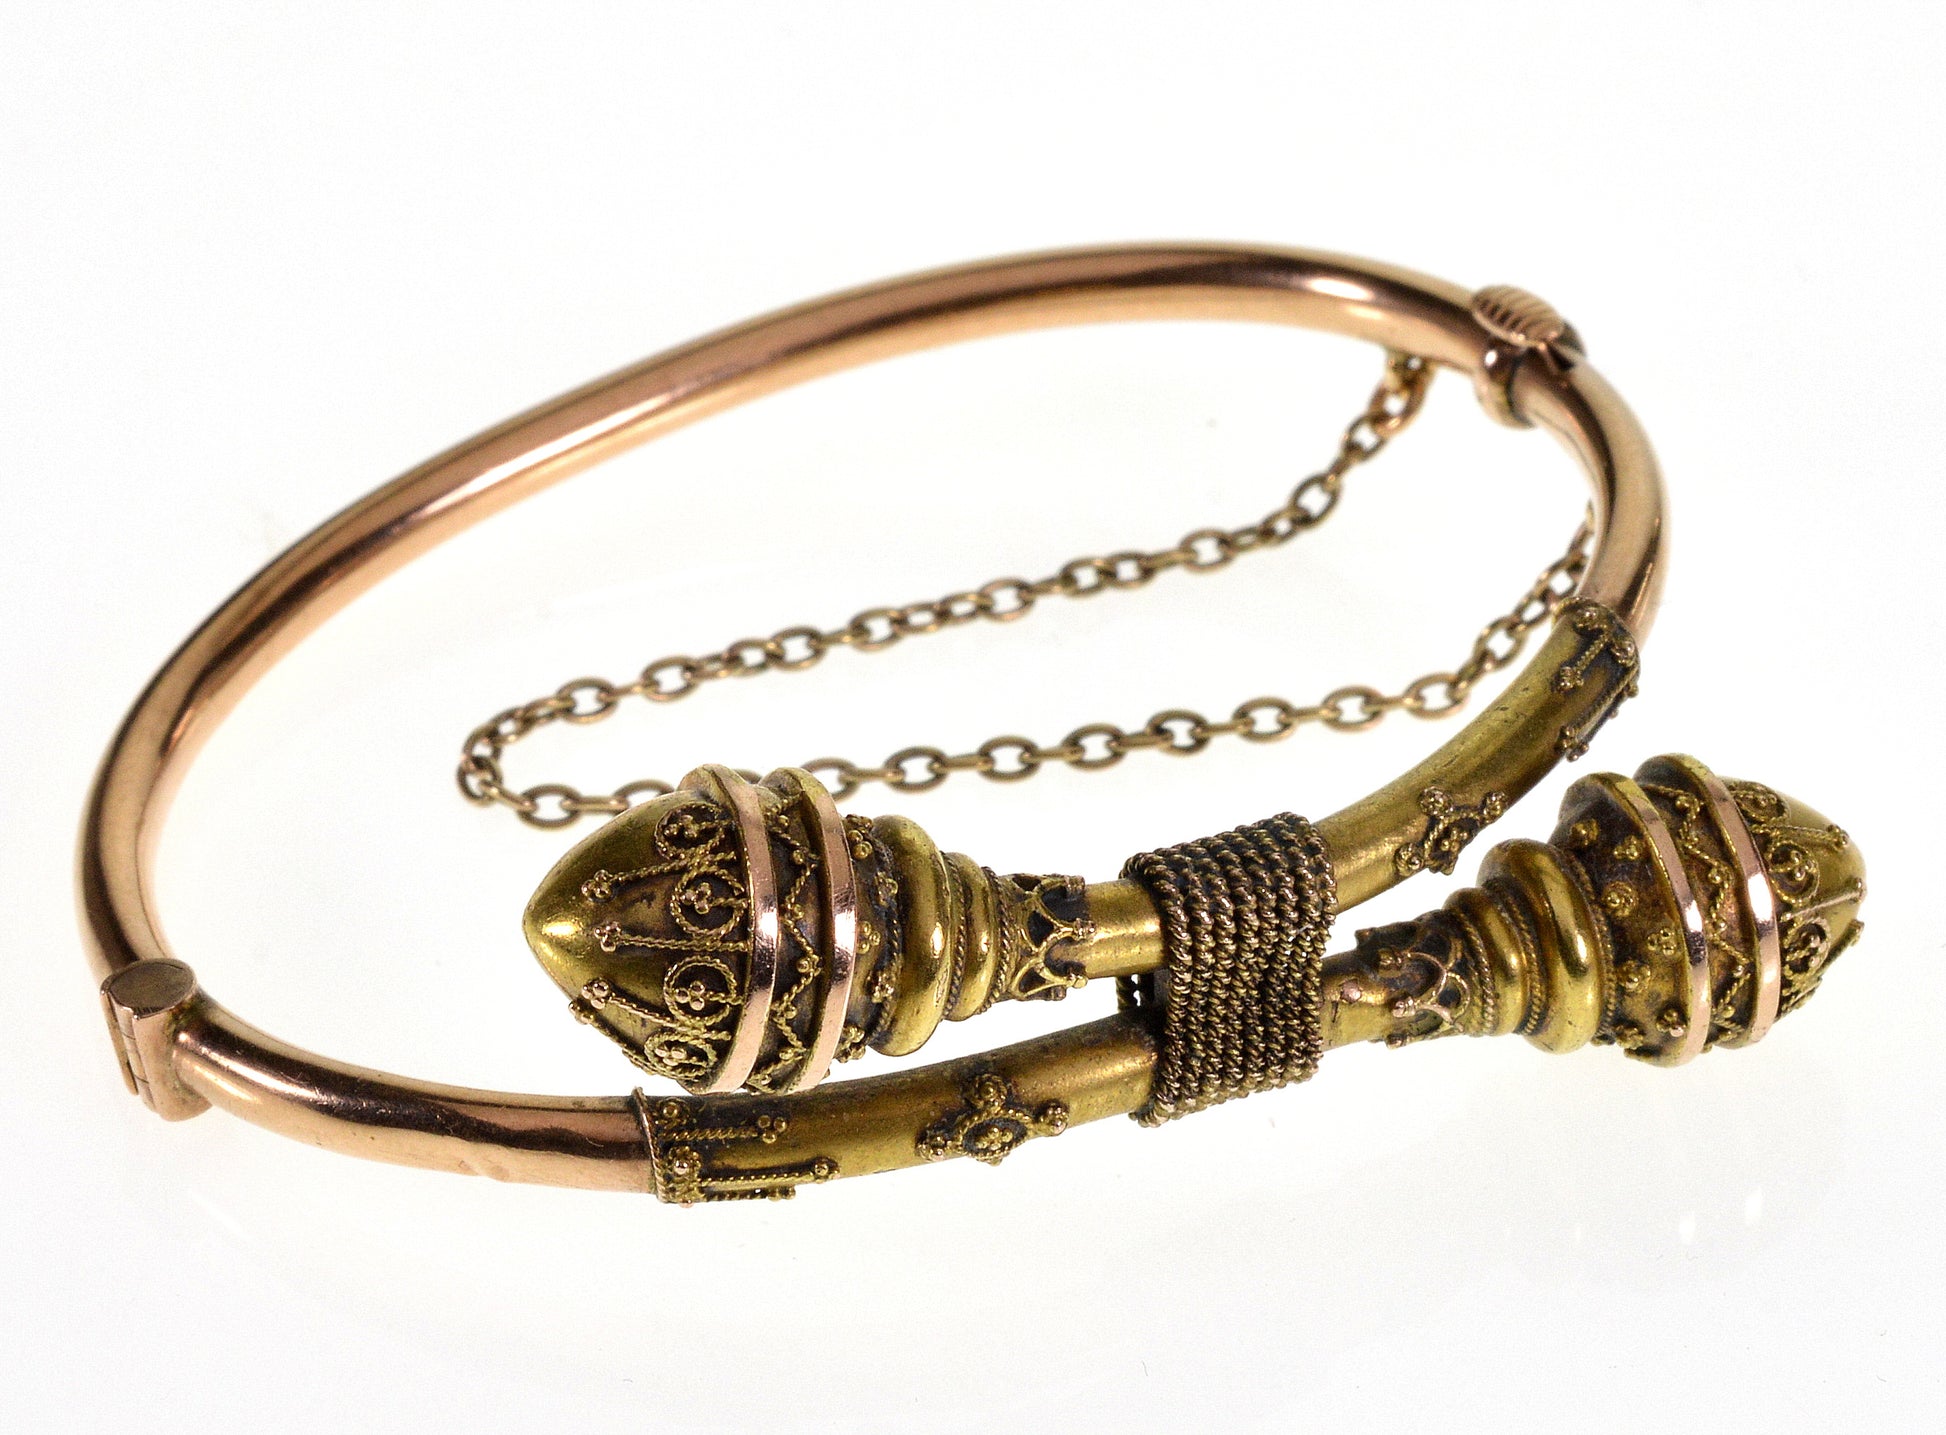 Antique Victorian Etruscan Revival 18K Gold Bypass Bracelet 5 1/2" C.1870